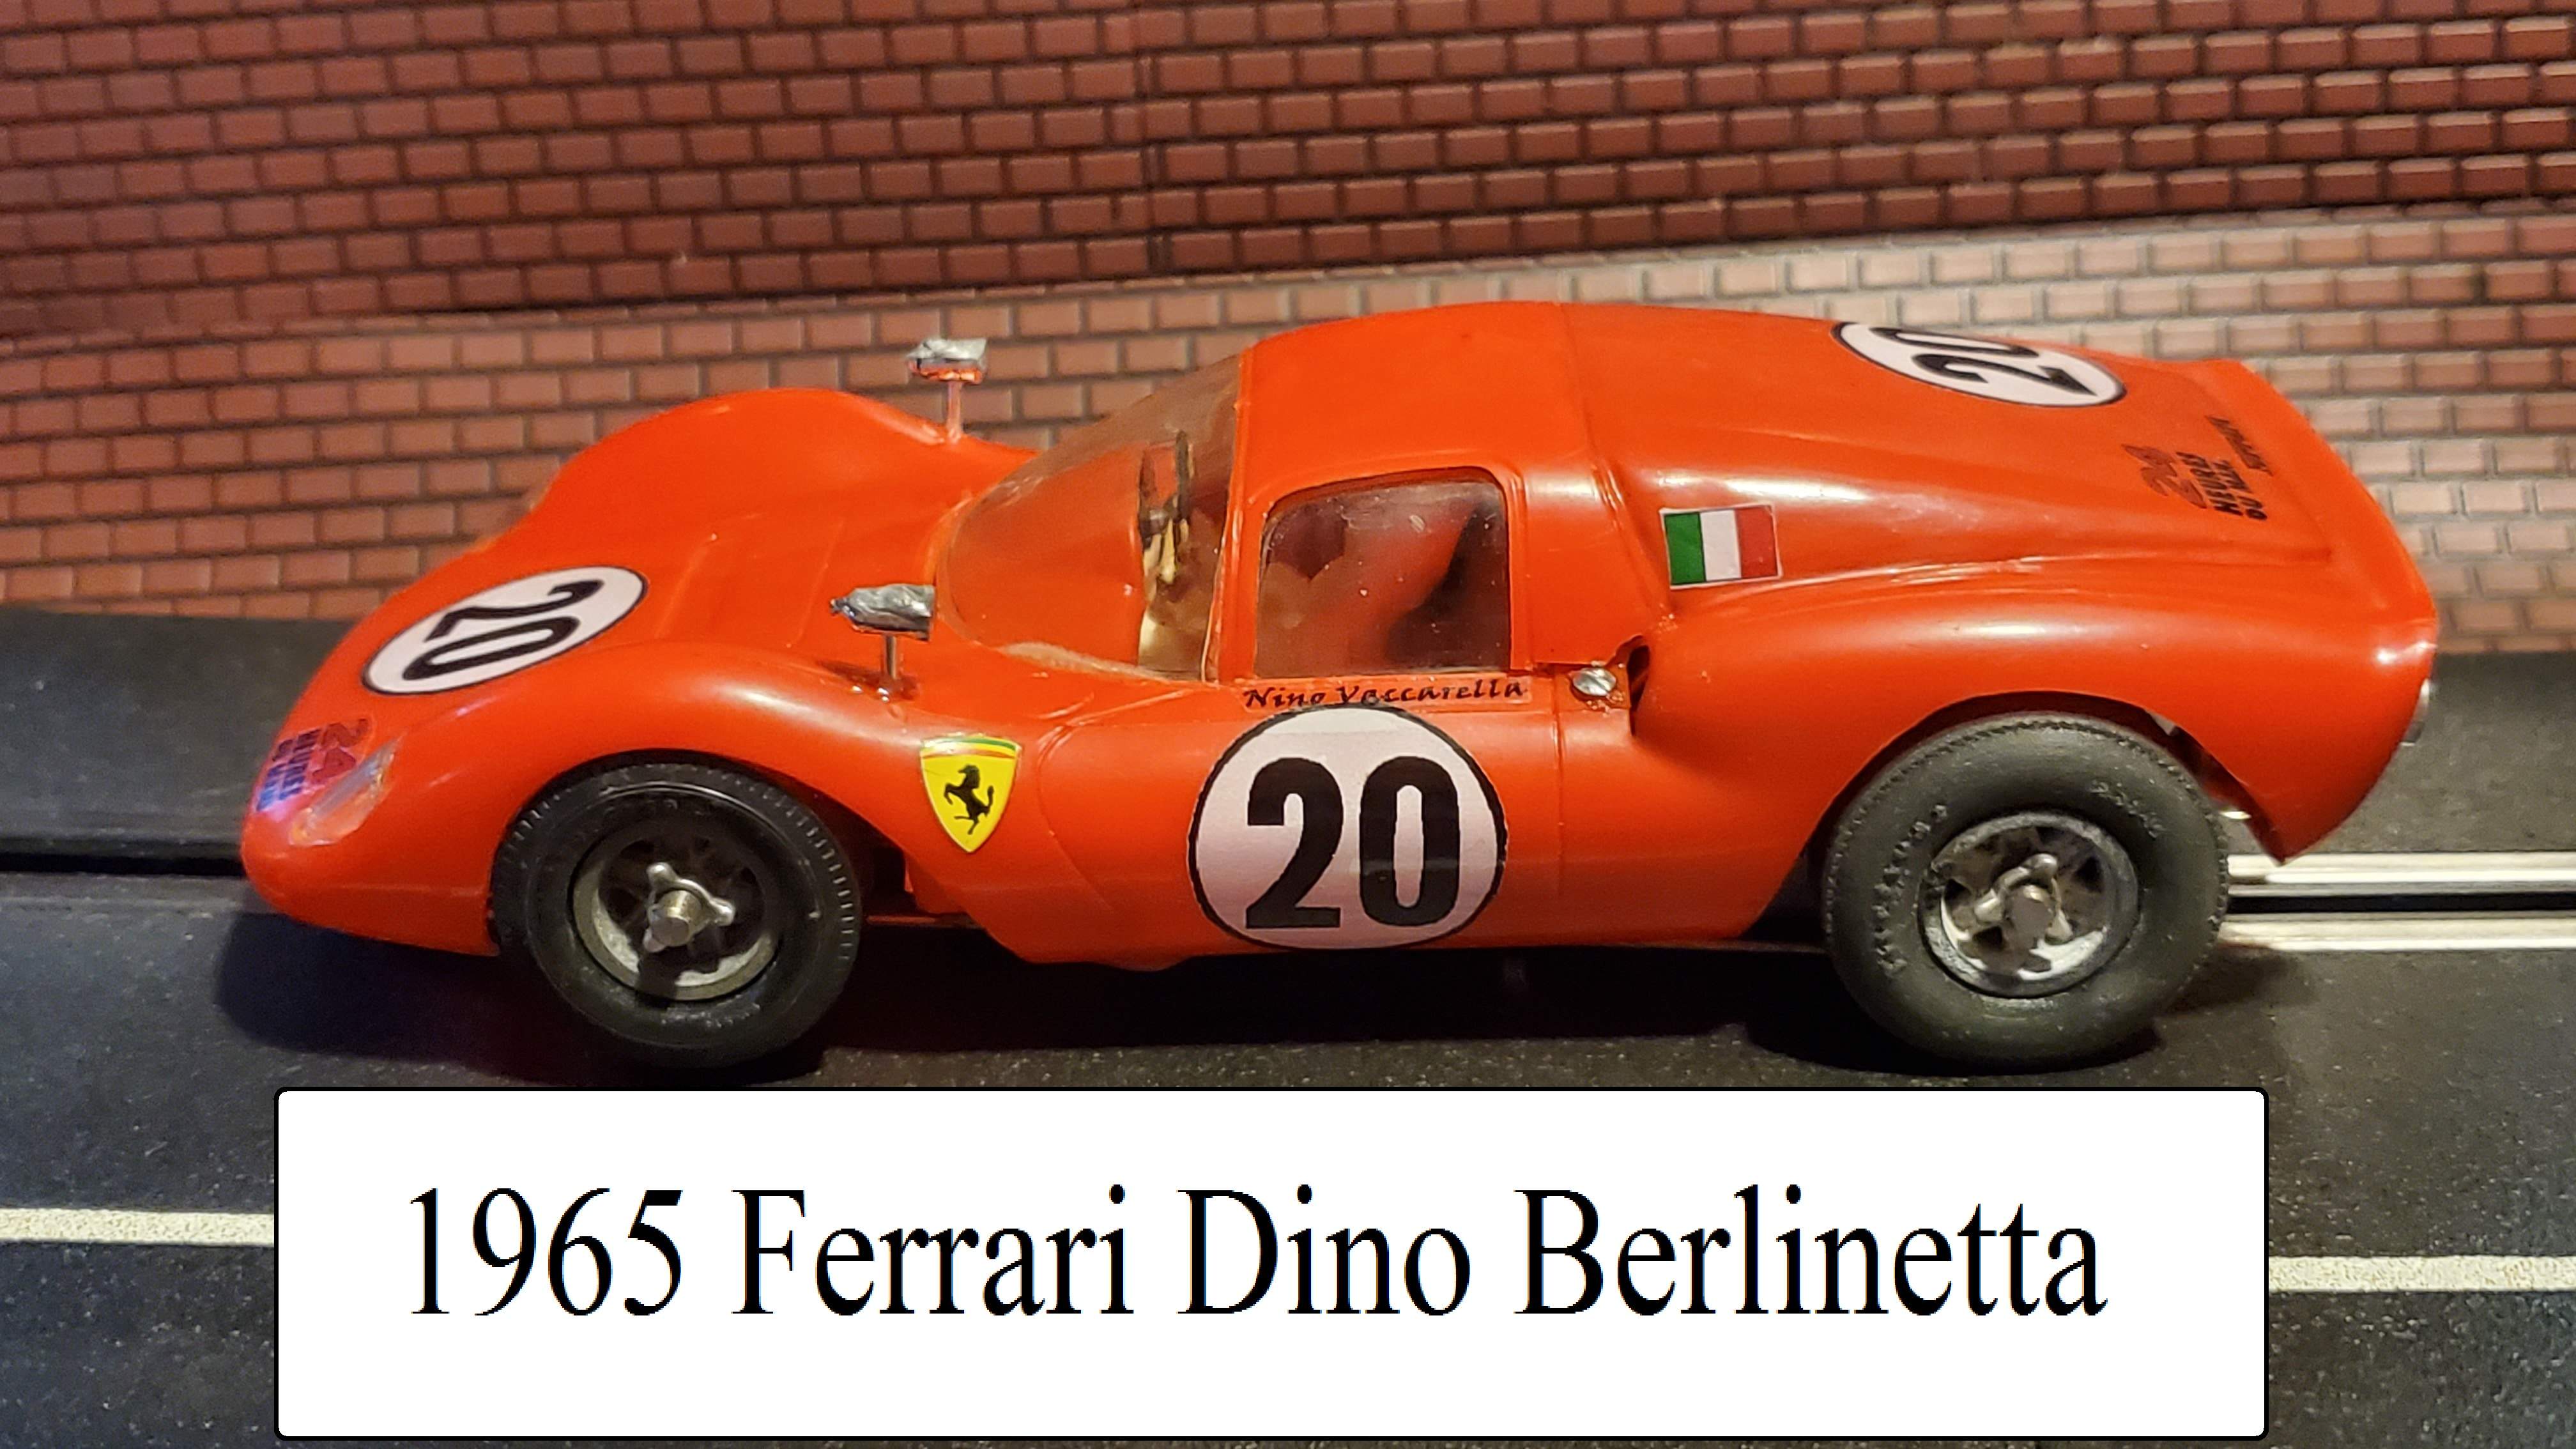 *Sale*, Save $100.00 off our Ebay Price * 1965 COX Ferrari Dino Berlinetta / Ferrari Dine 166 P on COX Competition Chassis 1/24 Scale Slot Car